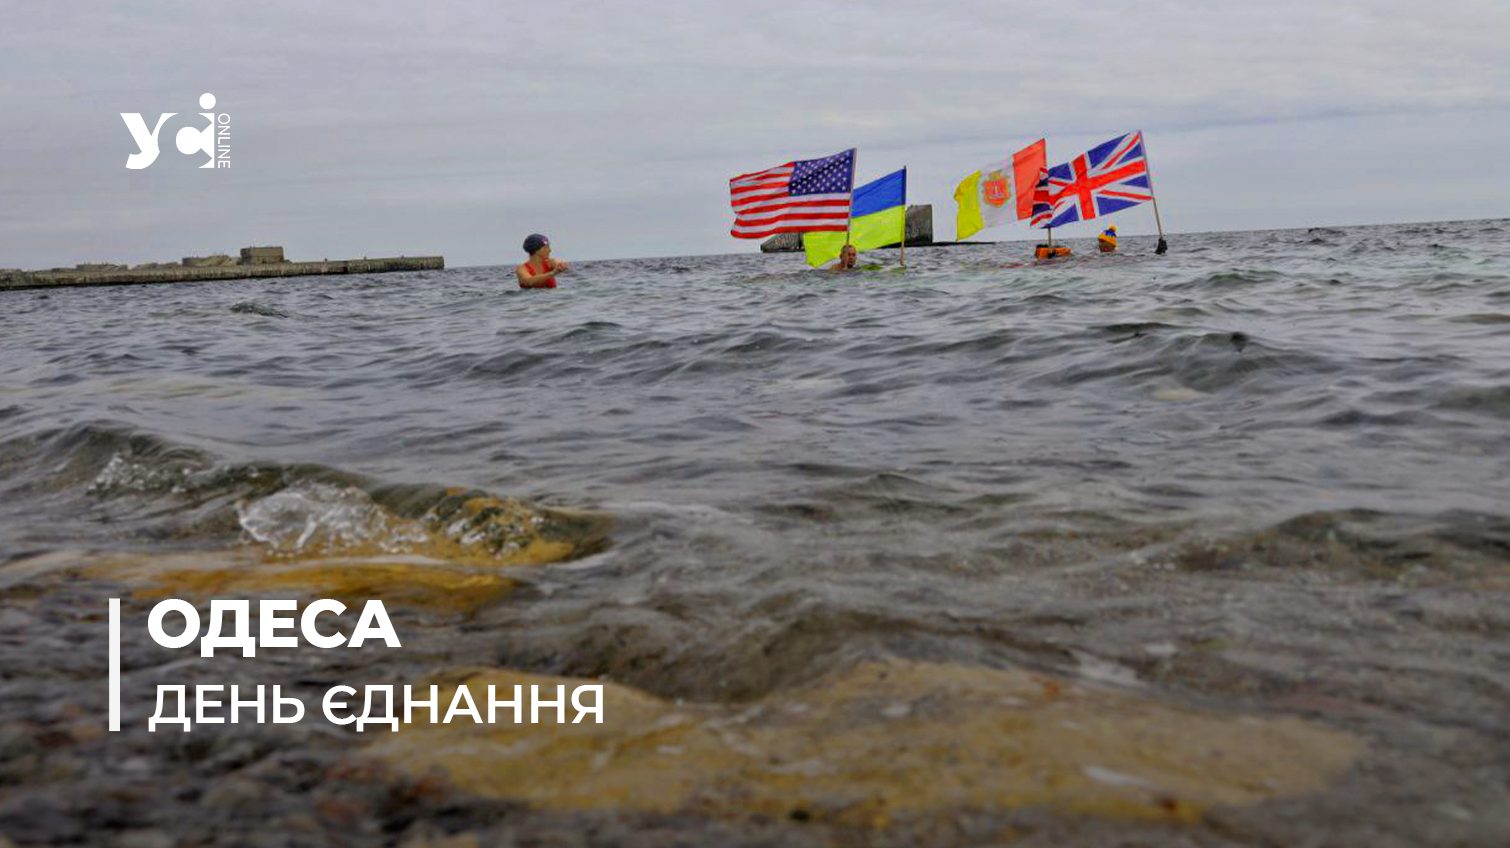 В День єднання в Одесі пройшов екстремальний заплив (фото, відео) «фото»